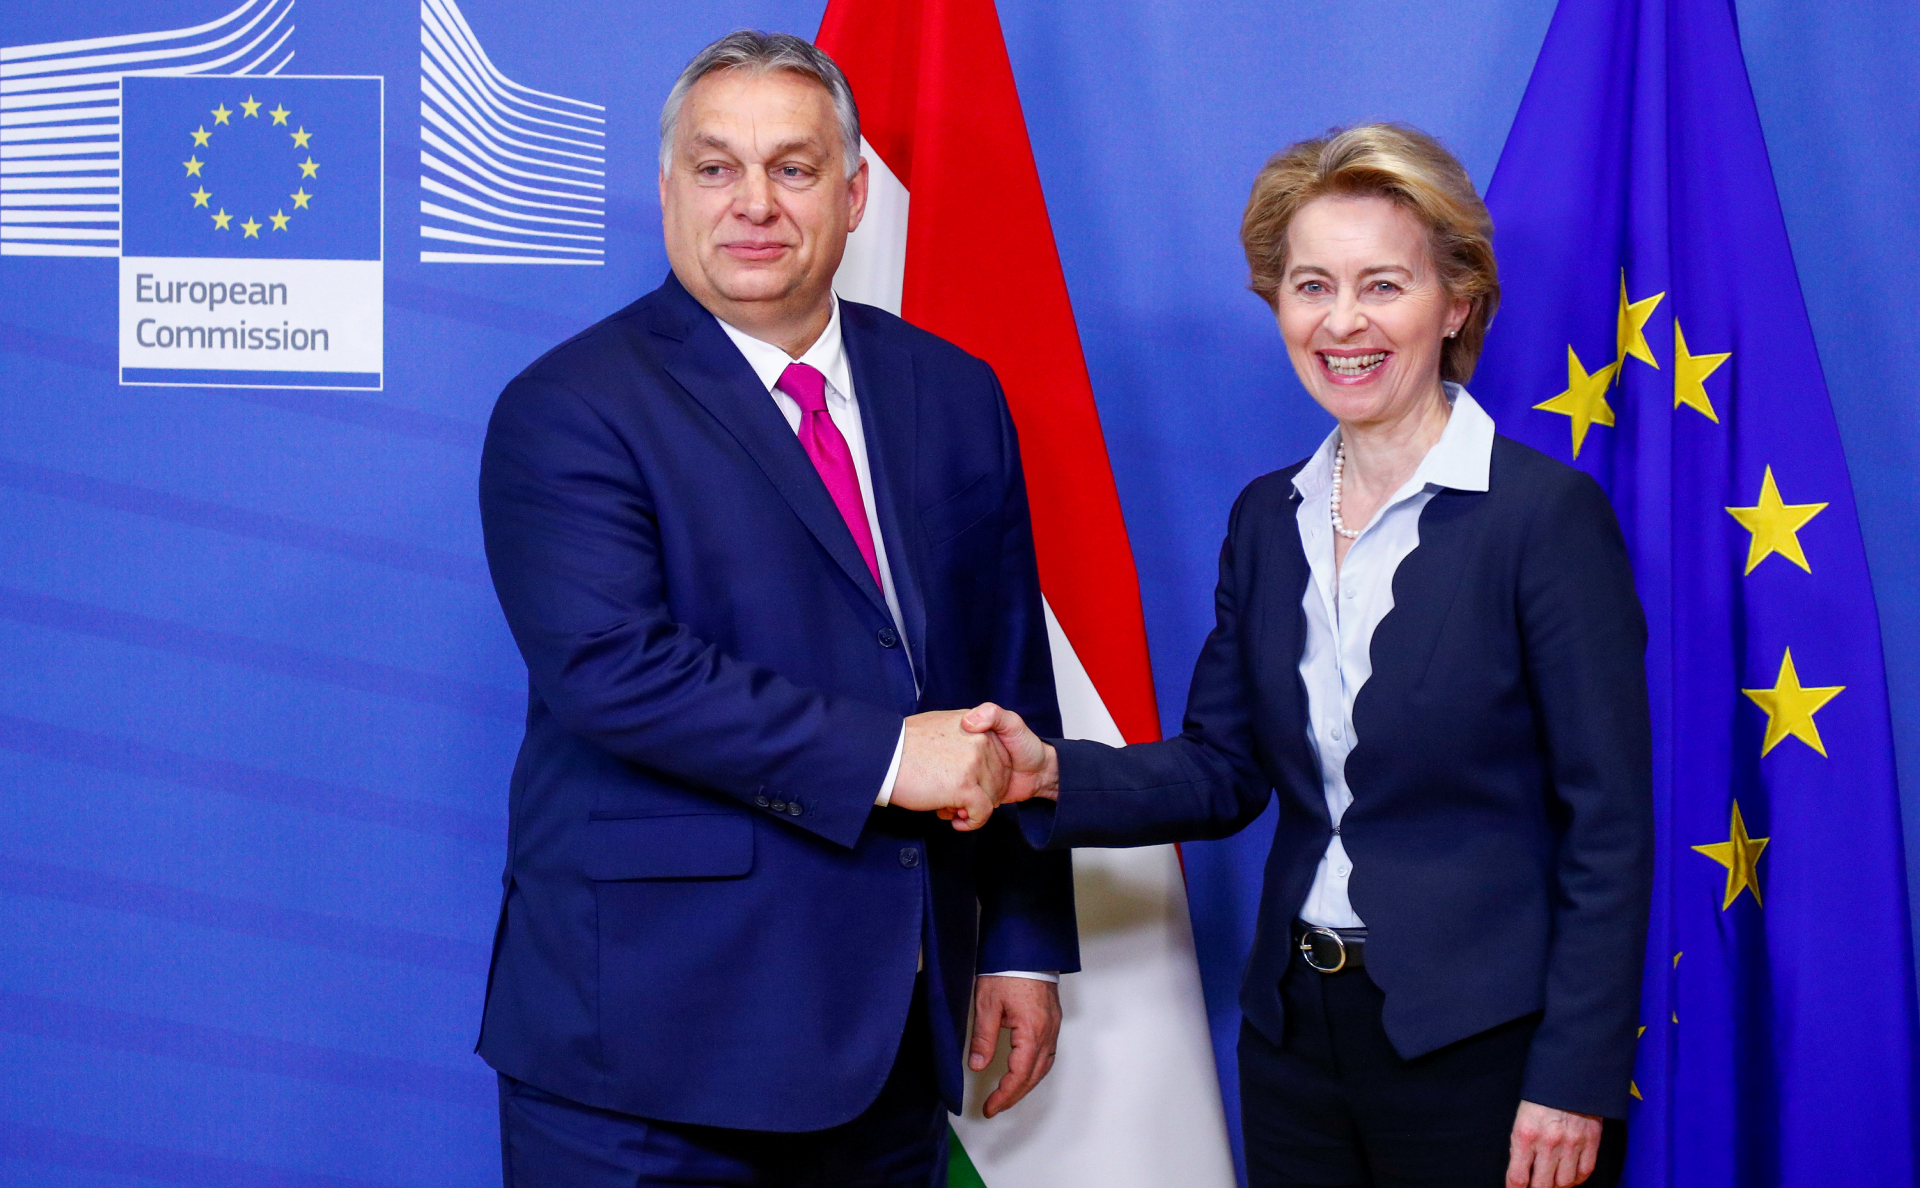 ЕК заявила о прогрессе в обсуждении с Венгрией запрета нефти из России"/>













